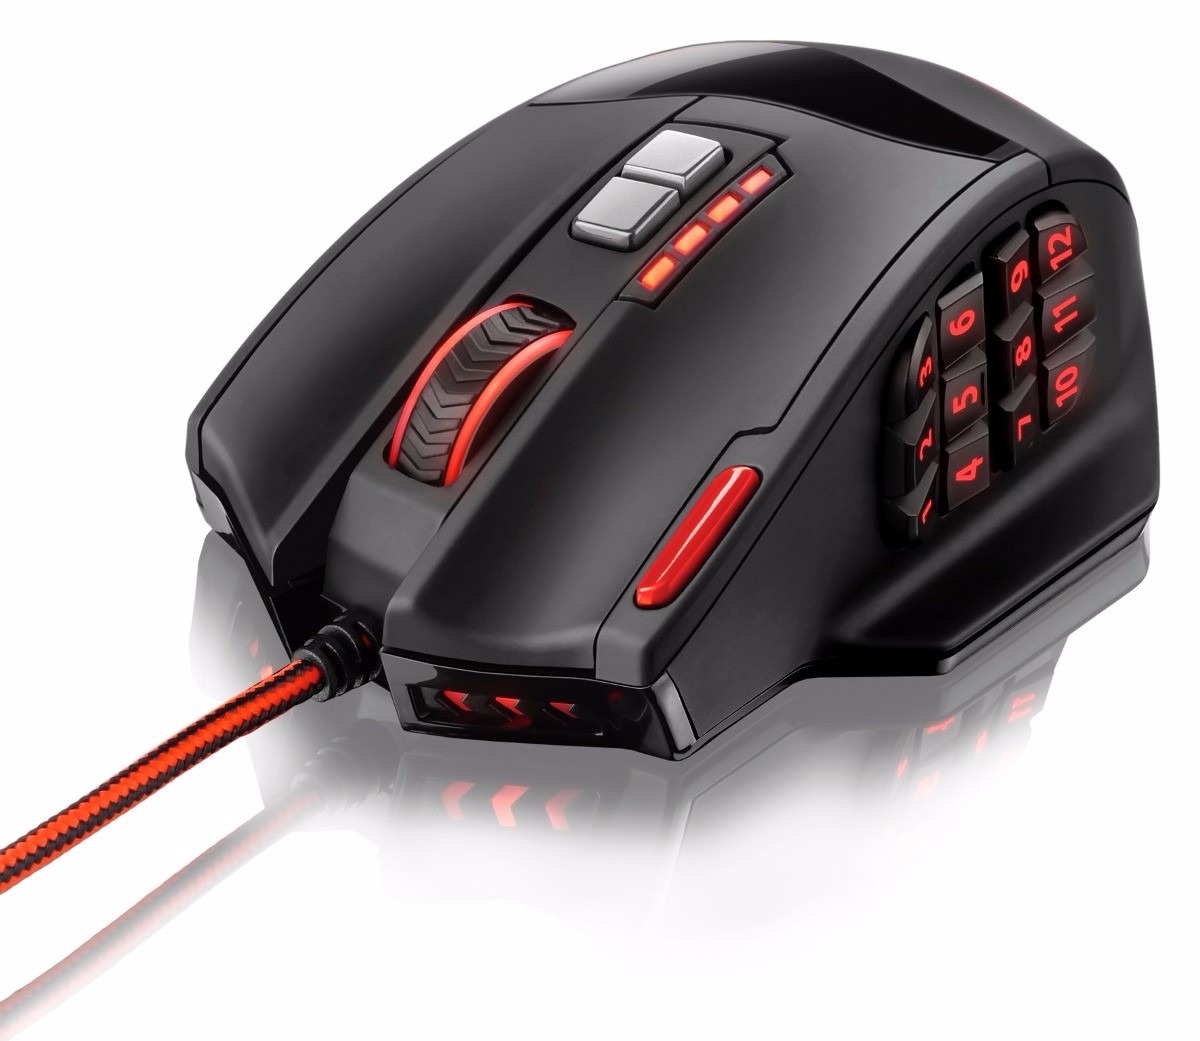 Sibm mouse. Игровая мышка Charon. Мышь игровая playmax mo-318. Macro Gaming Mouse. Игровая мышь с гладиатором.